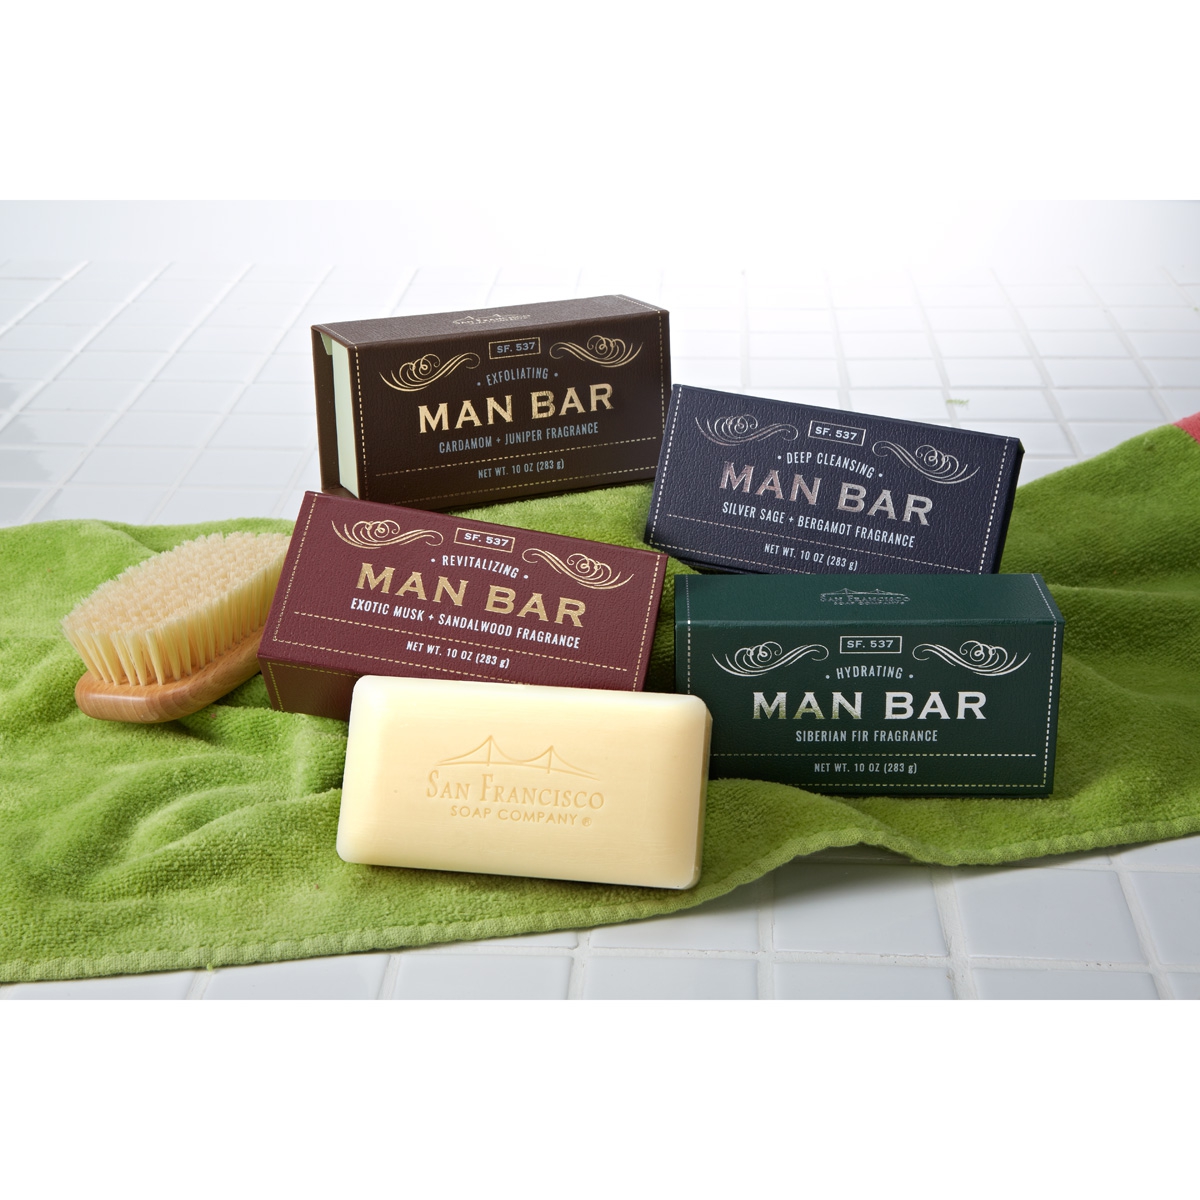 Man Bar soap body usa